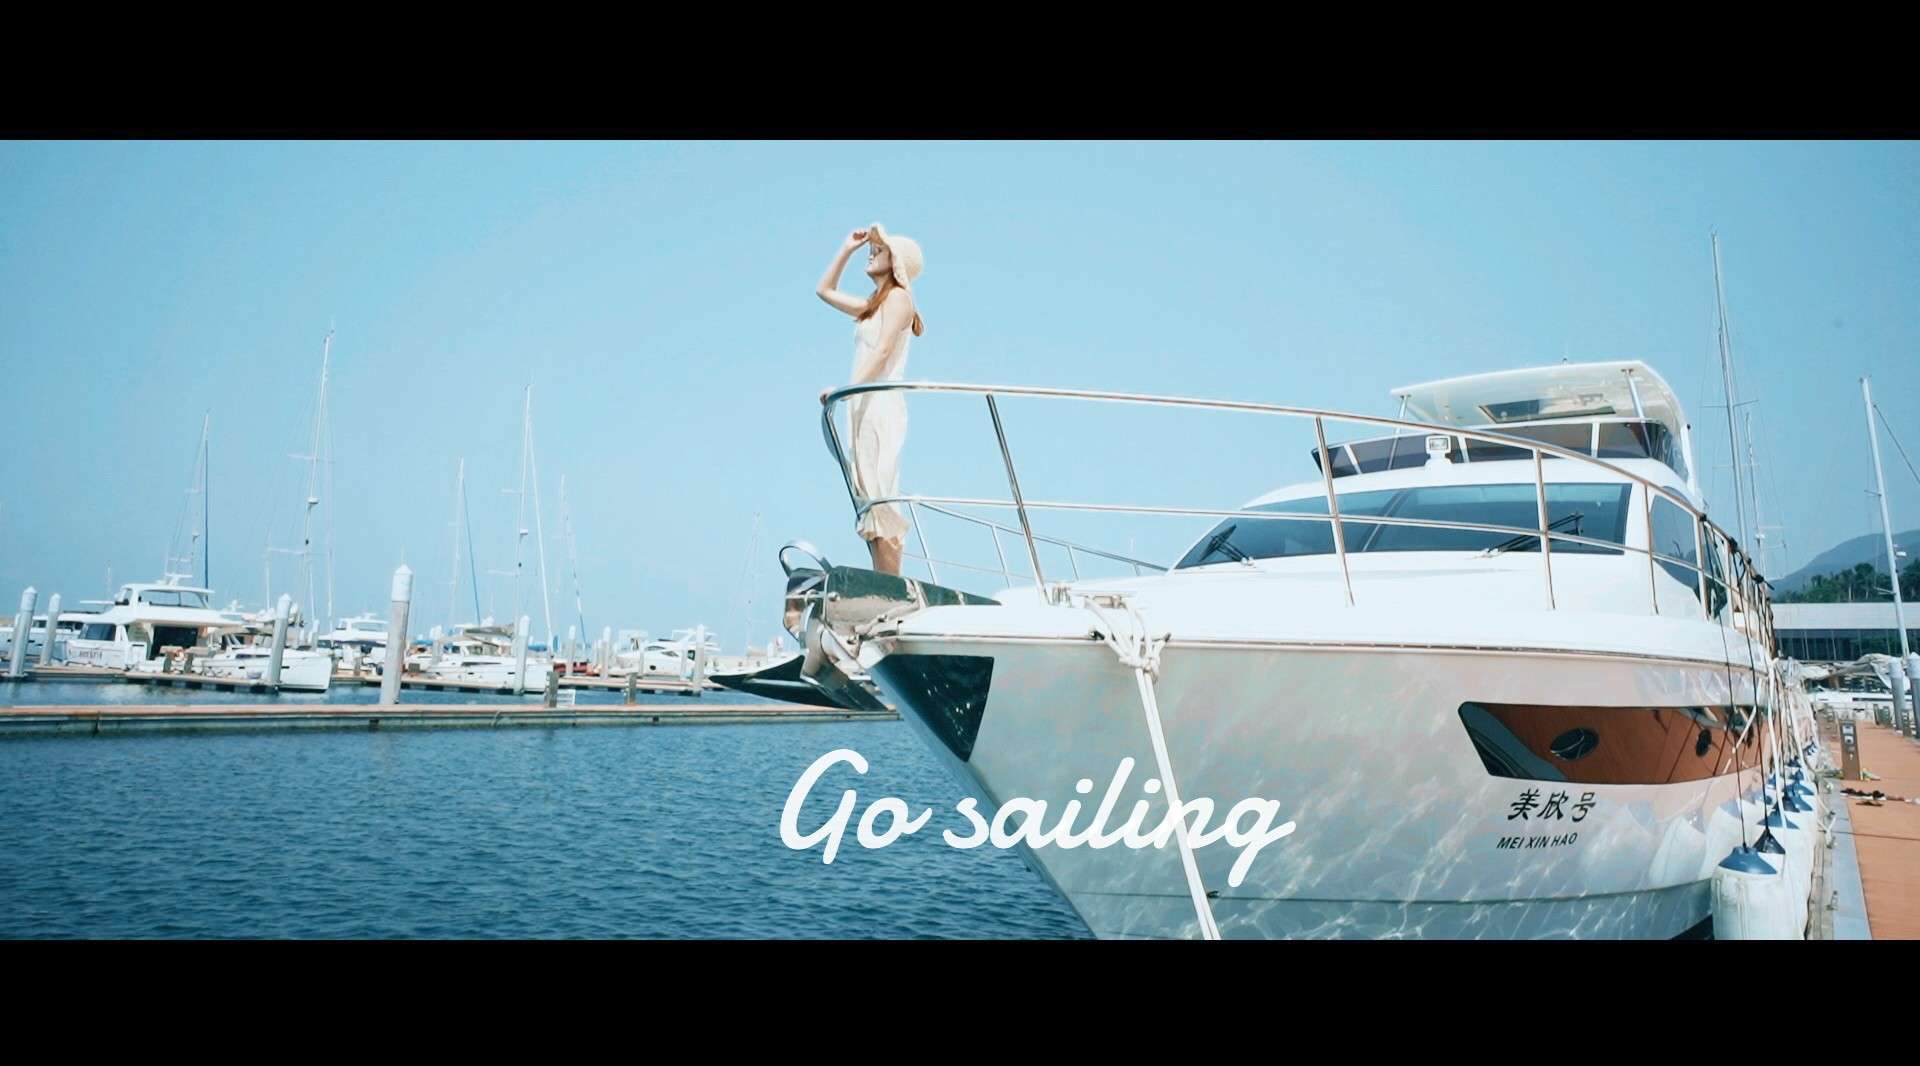 【帆船出海vlog短片】感受海上速度与激情/ 索尼A7m3拍摄